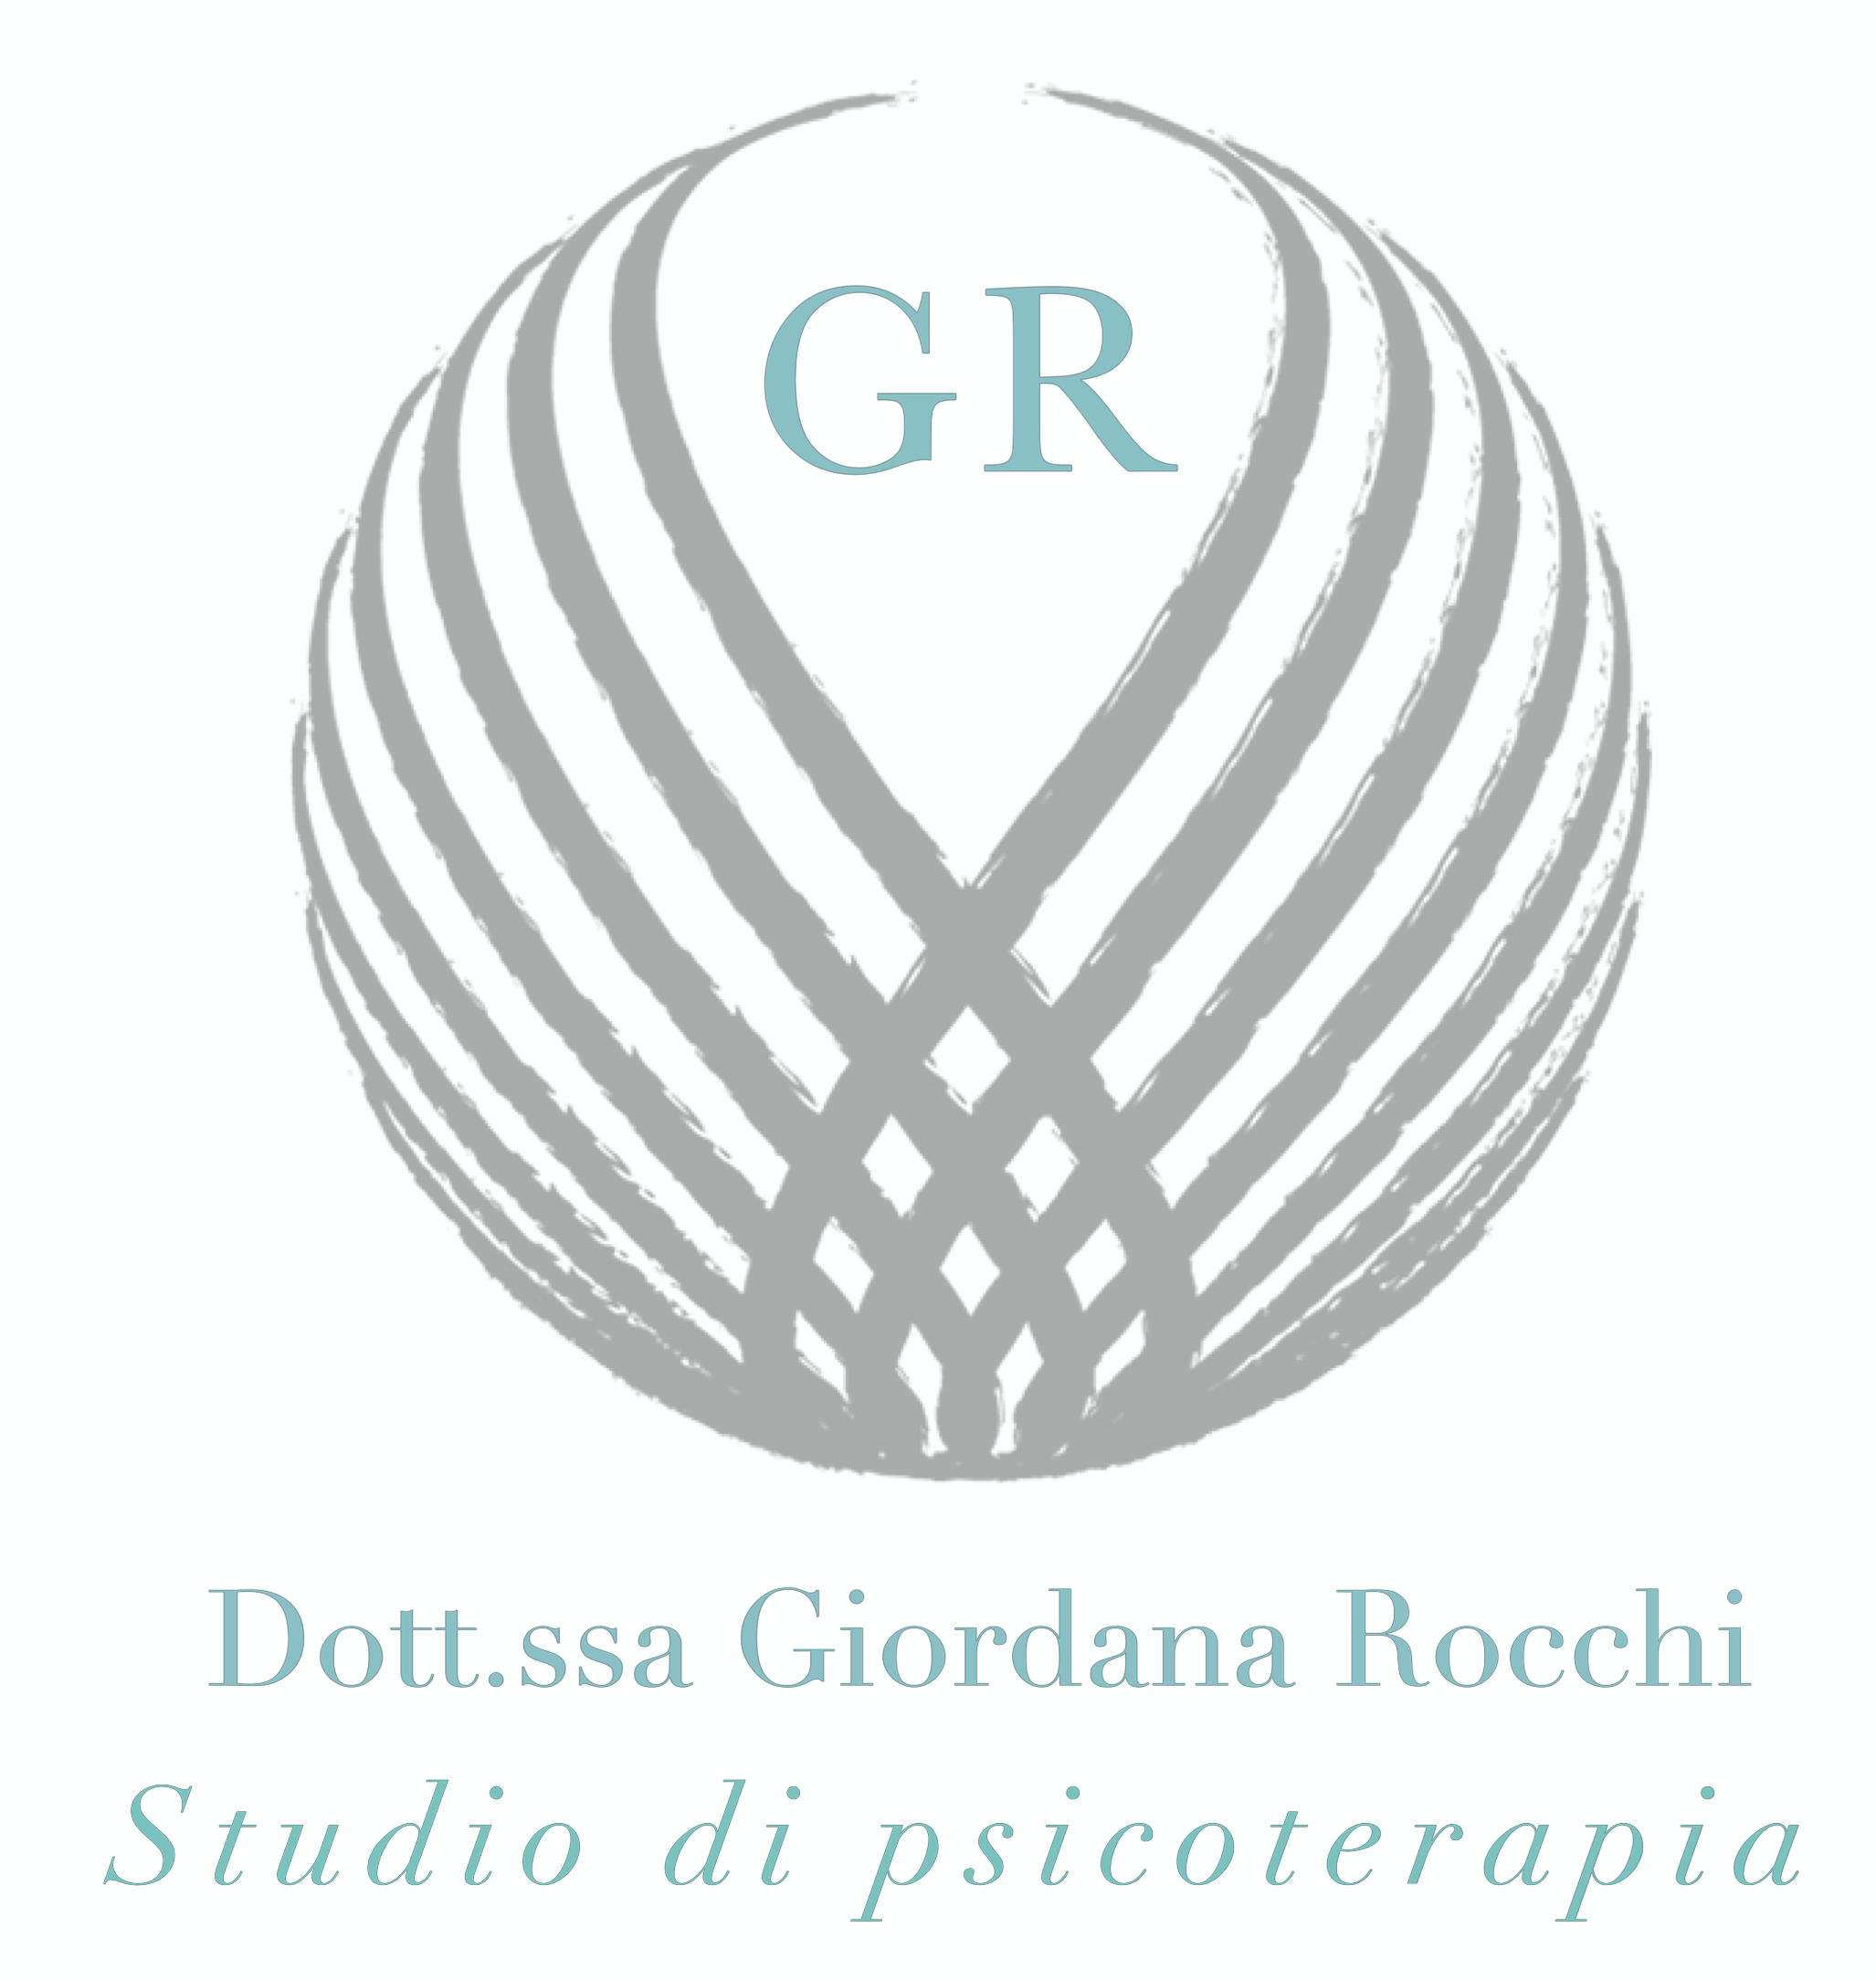 Dott.ssa Giordana Rocchi – Studio di psicoterapia